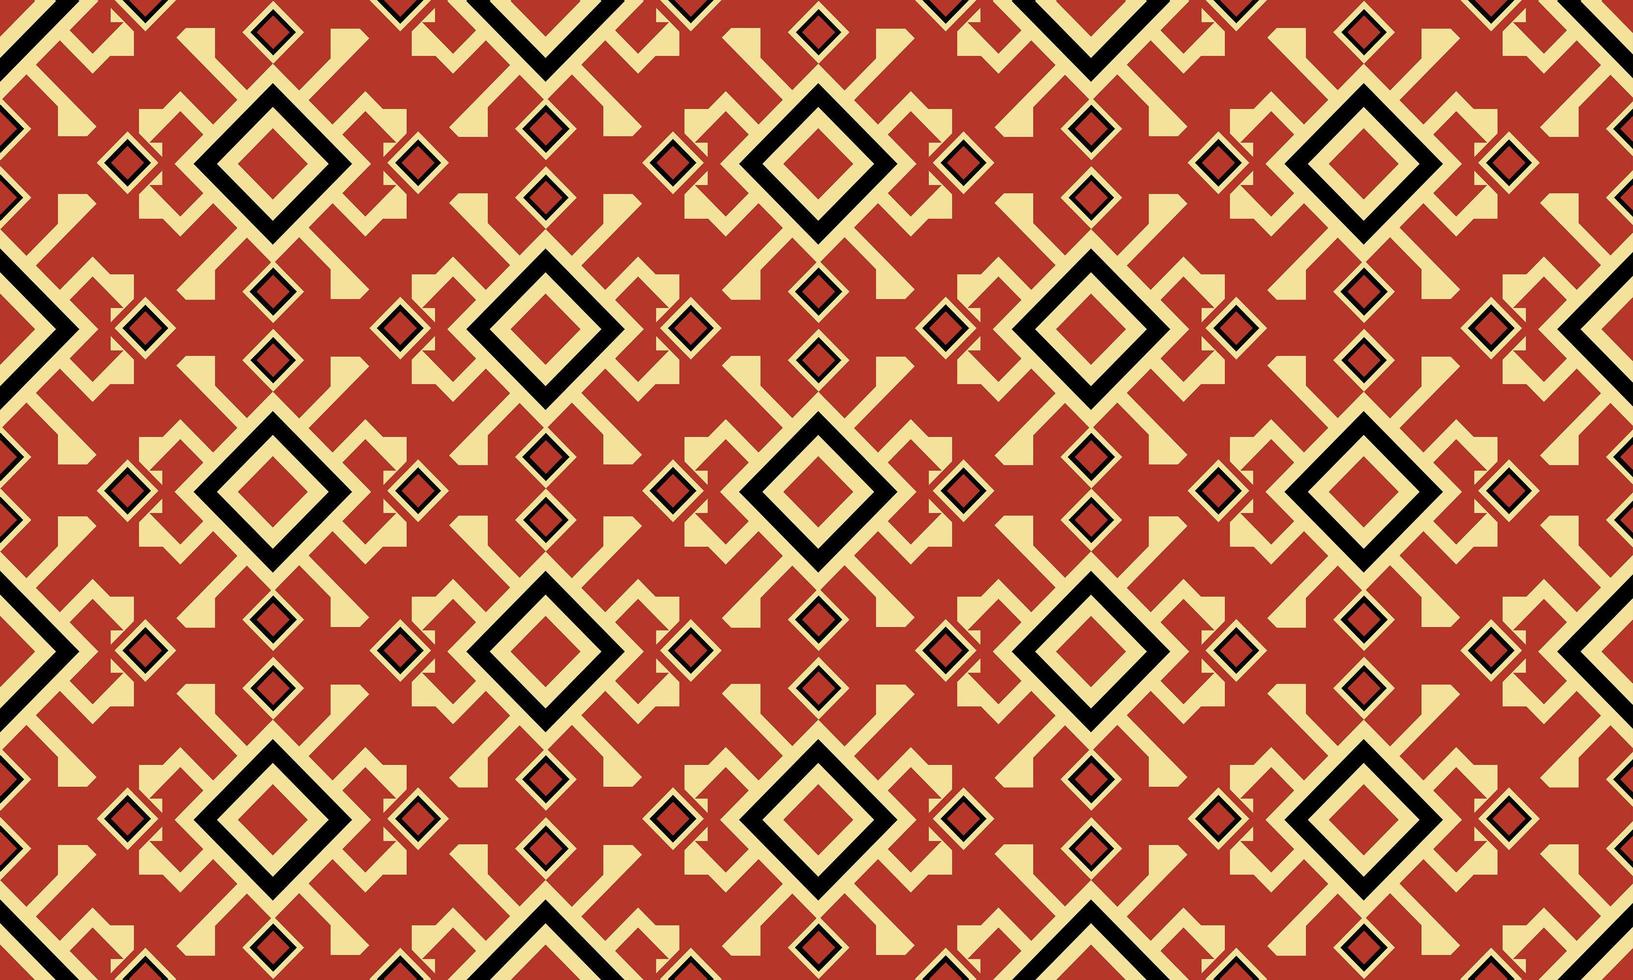 oriental étnica padrão sem emenda vector design de fundo tradicional para tapete, papel de parede, roupas, embrulho, batik, tecido, estilo de bordado de ilustração vetorial.